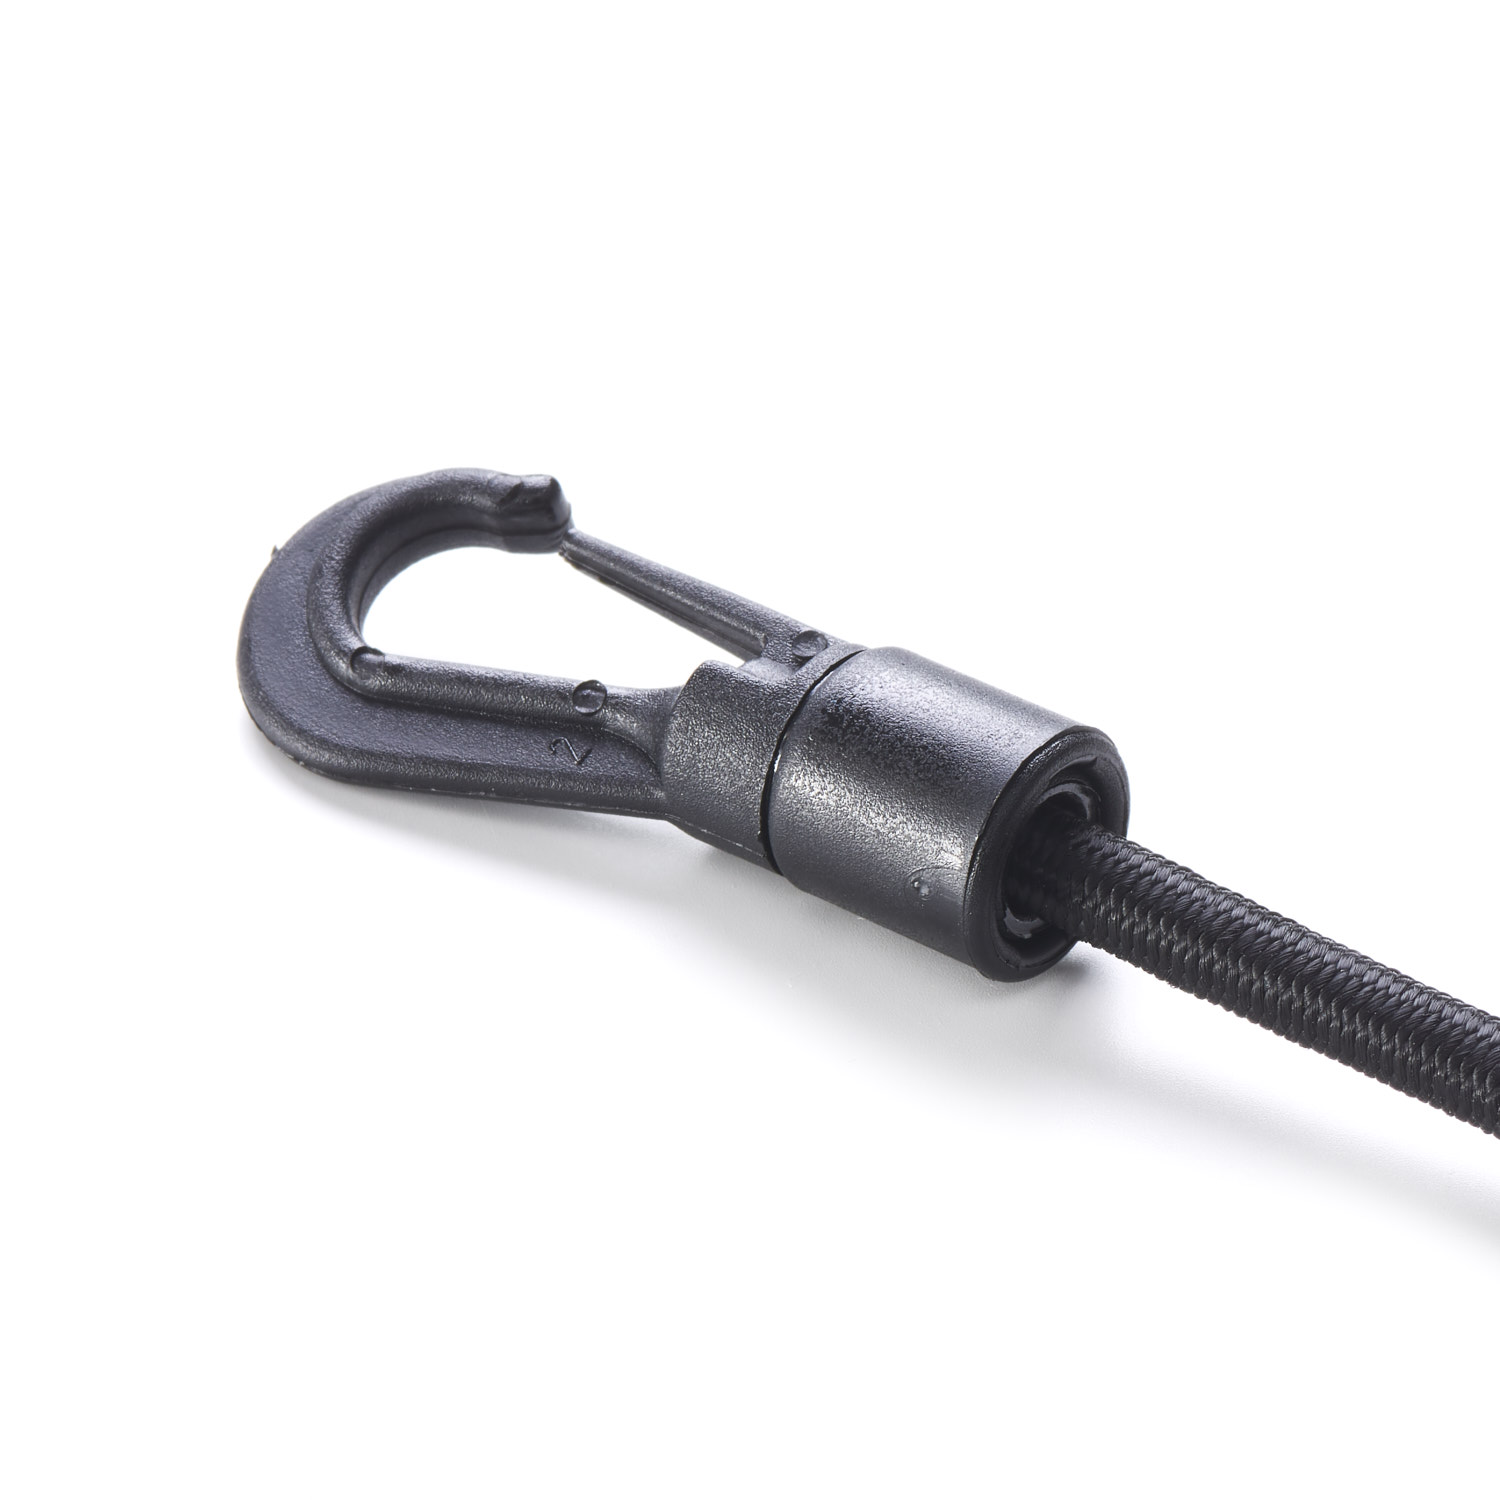 Gated Plastic Hook Ties Bungee Shock Cord Round ELastic Tie Down